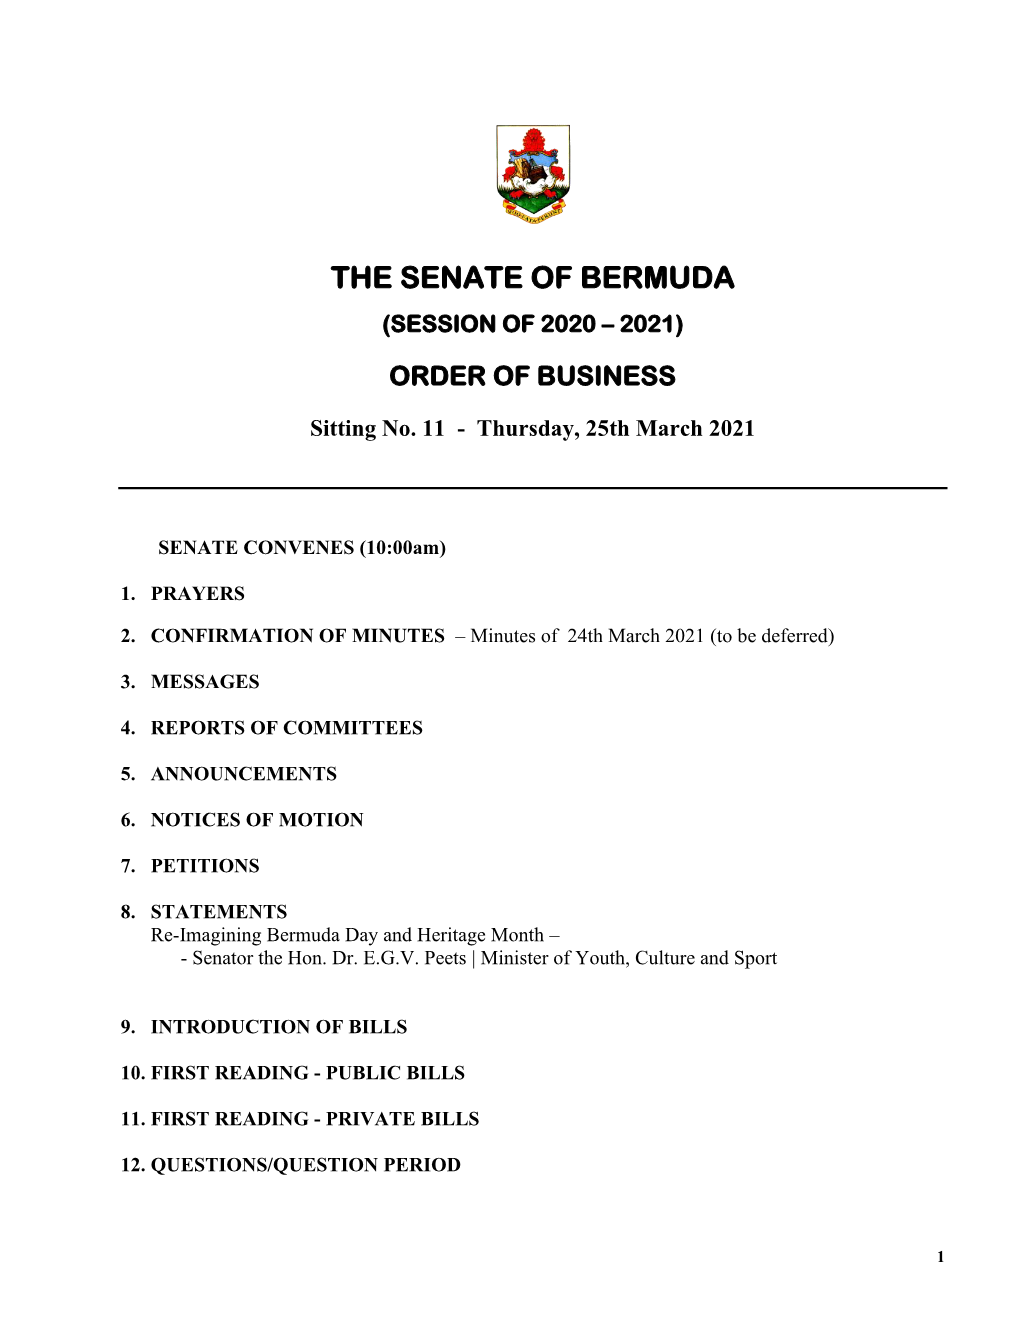 The Senate of Bermuda